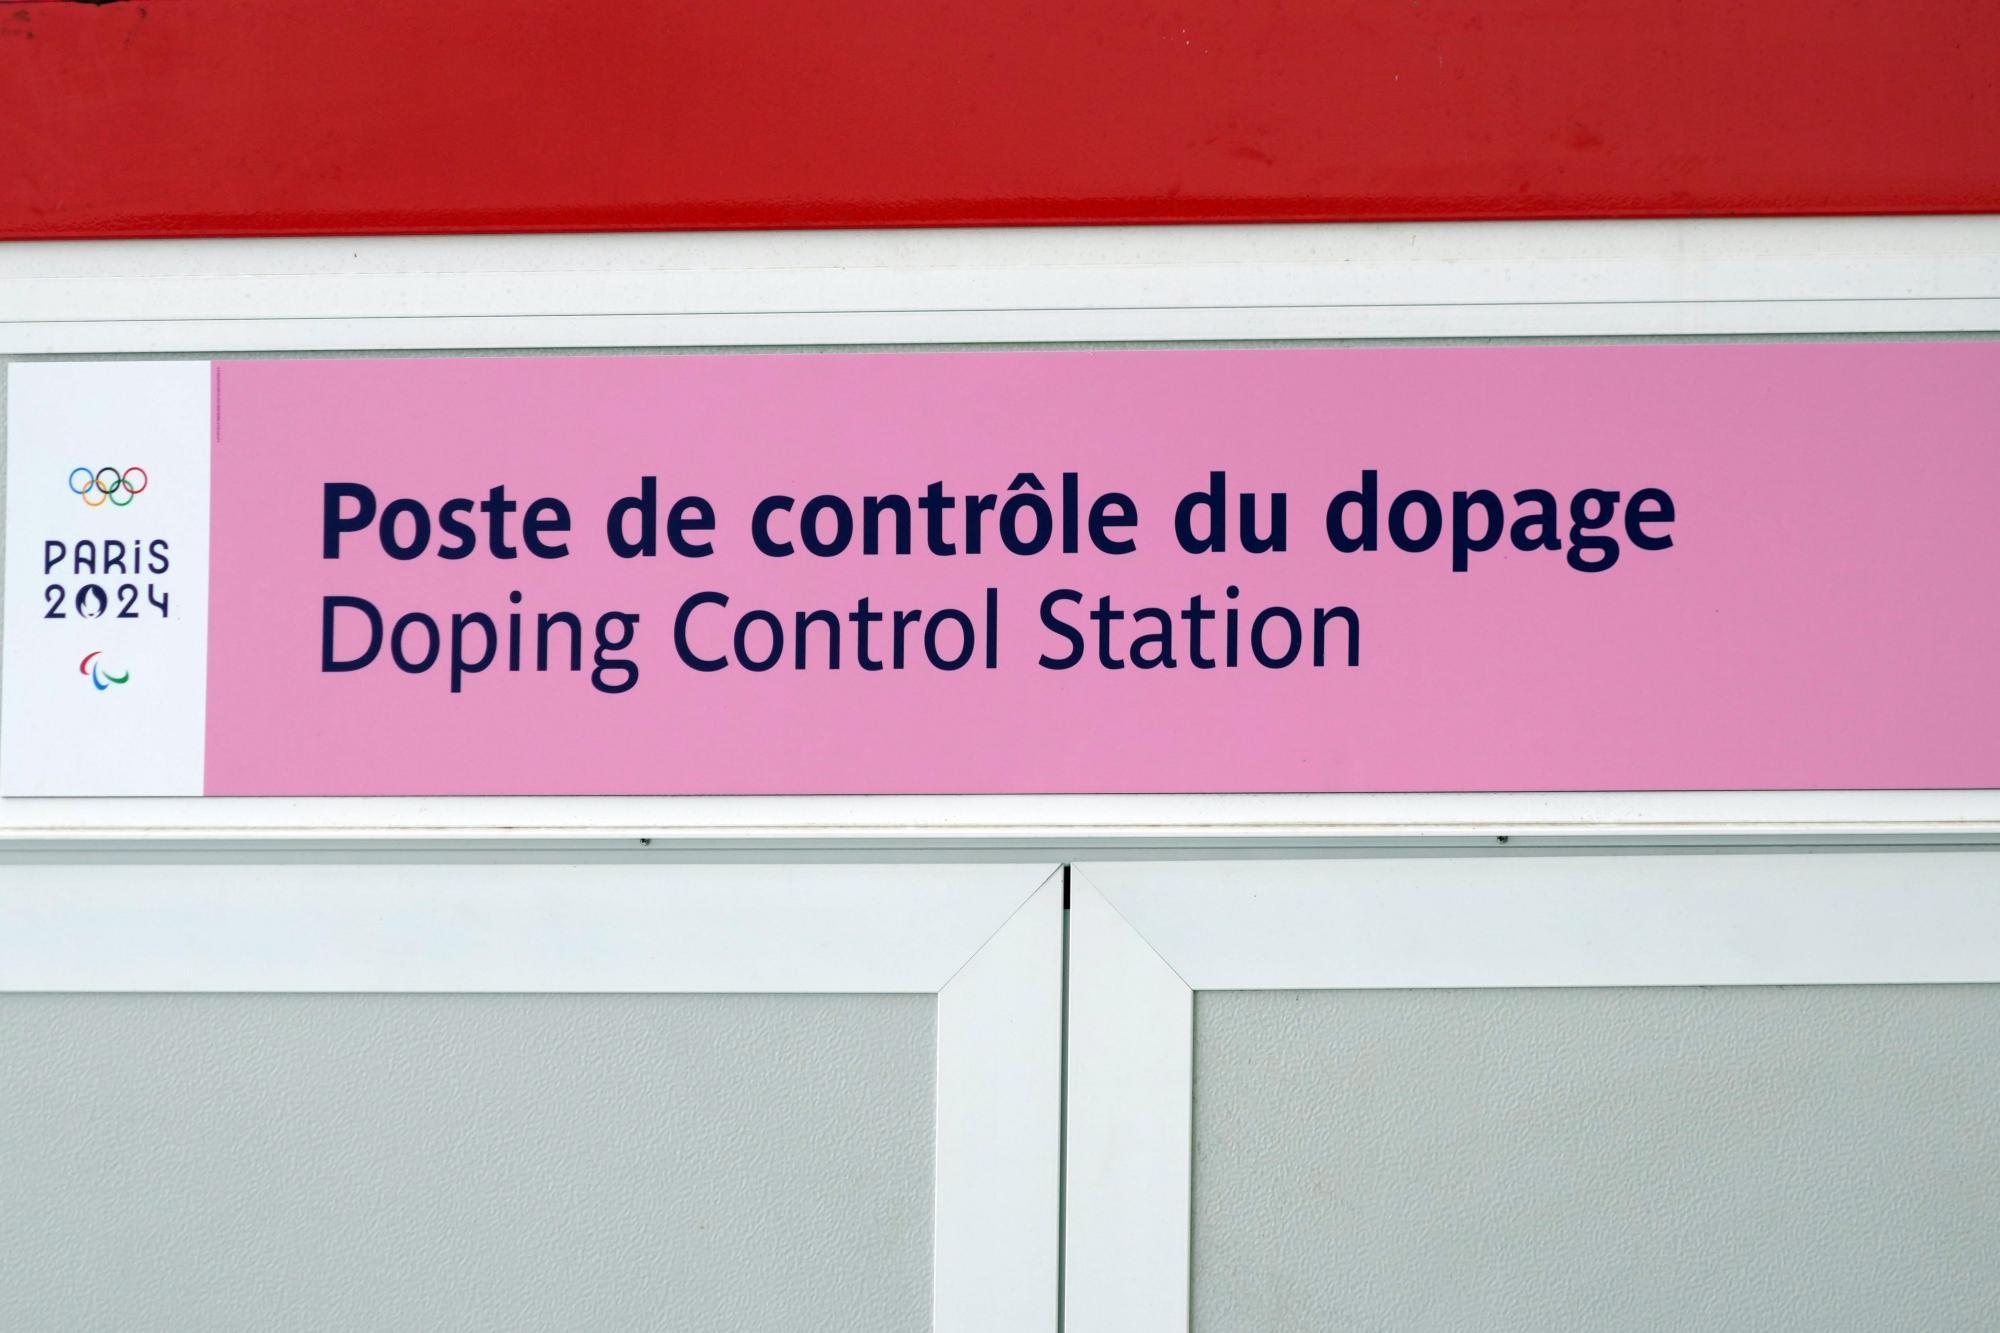 Aufregung vor Eröffnung: Olympischen Spiele haben schon ersten Dopingfall